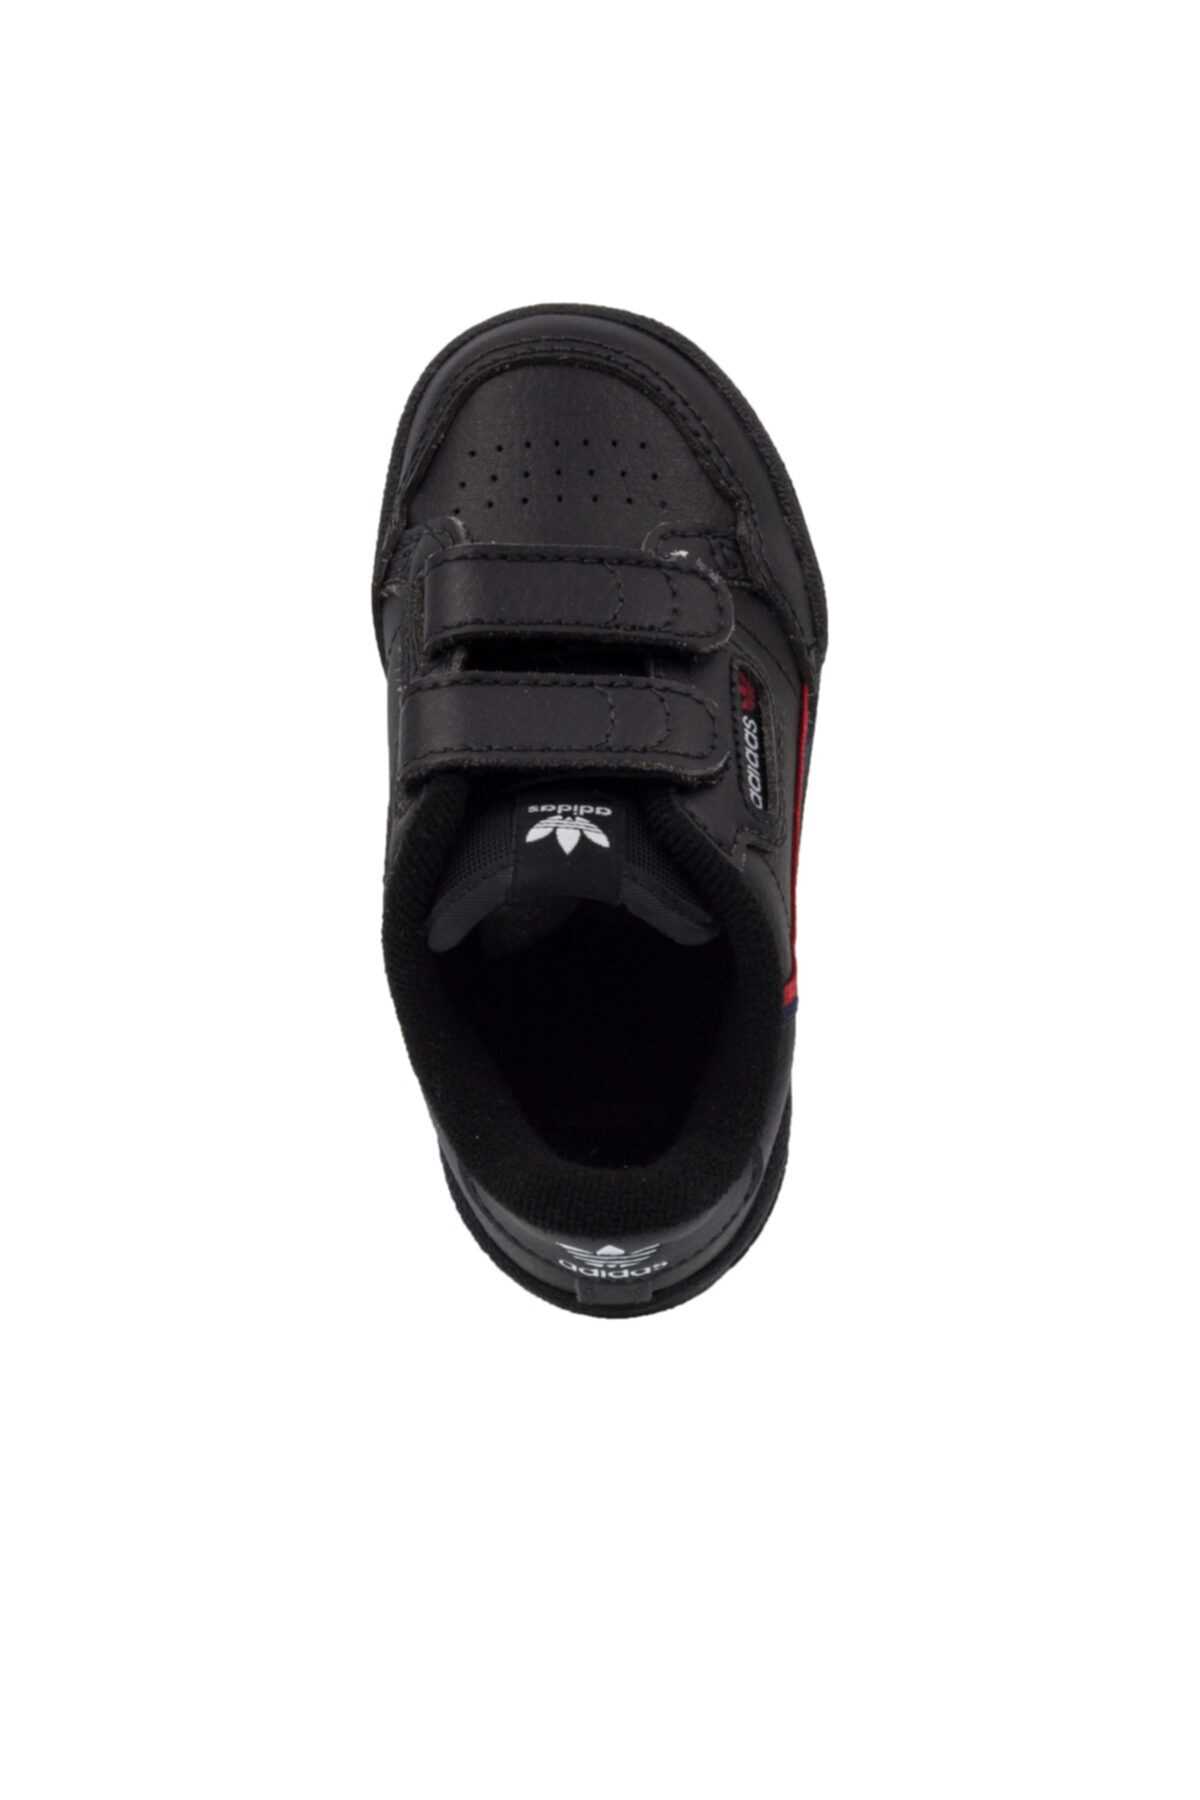 فروش کفش اسپرت نوزاد پسرانه شیک و جدید برند adidas رنگ مشکی کد ty35070511